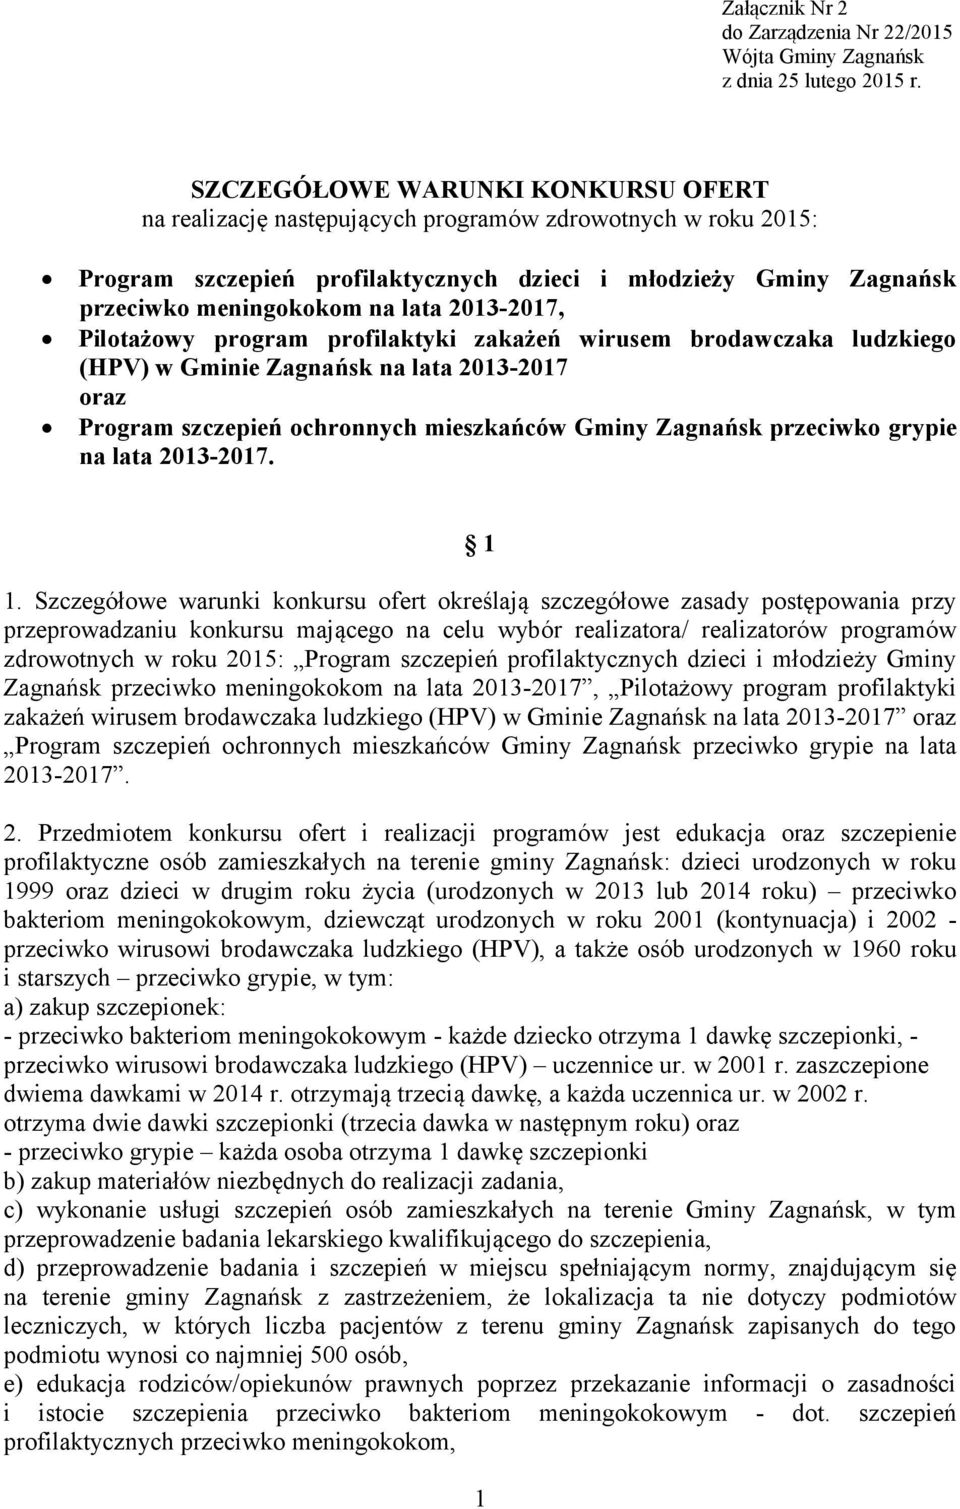 2013-2017, Pilotażowy program profilaktyki zakażeń wirusem brodawczaka ludzkiego (HPV) w Gminie Zagnańsk na lata 2013-2017 oraz Program szczepień ochronnych mieszkańców Gminy Zagnańsk przeciwko